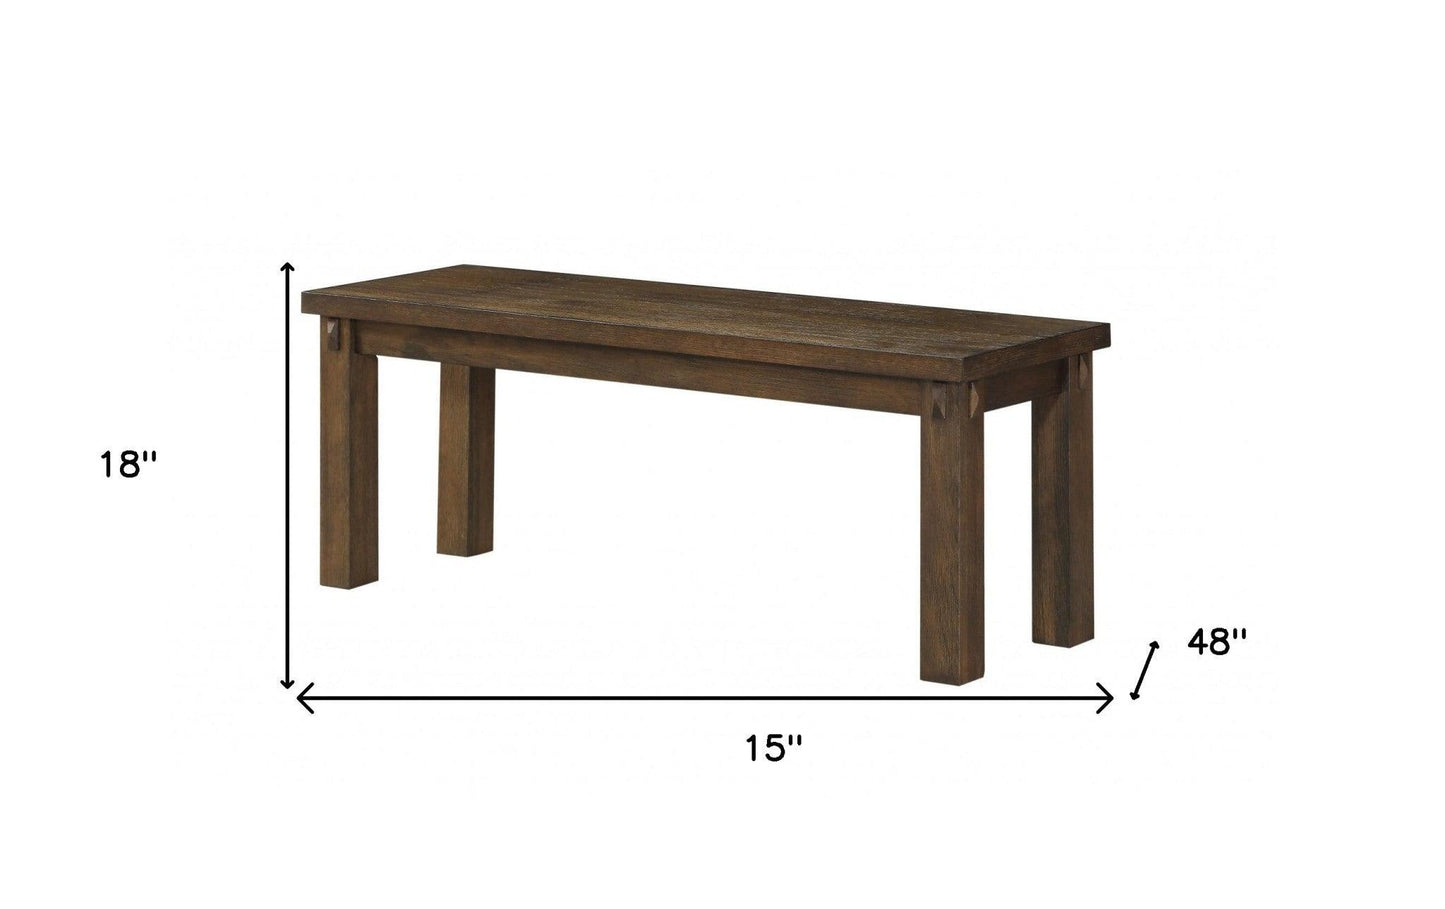 15" X 48" X 18" Dark Oak Wood Bench - FurniFindUSA